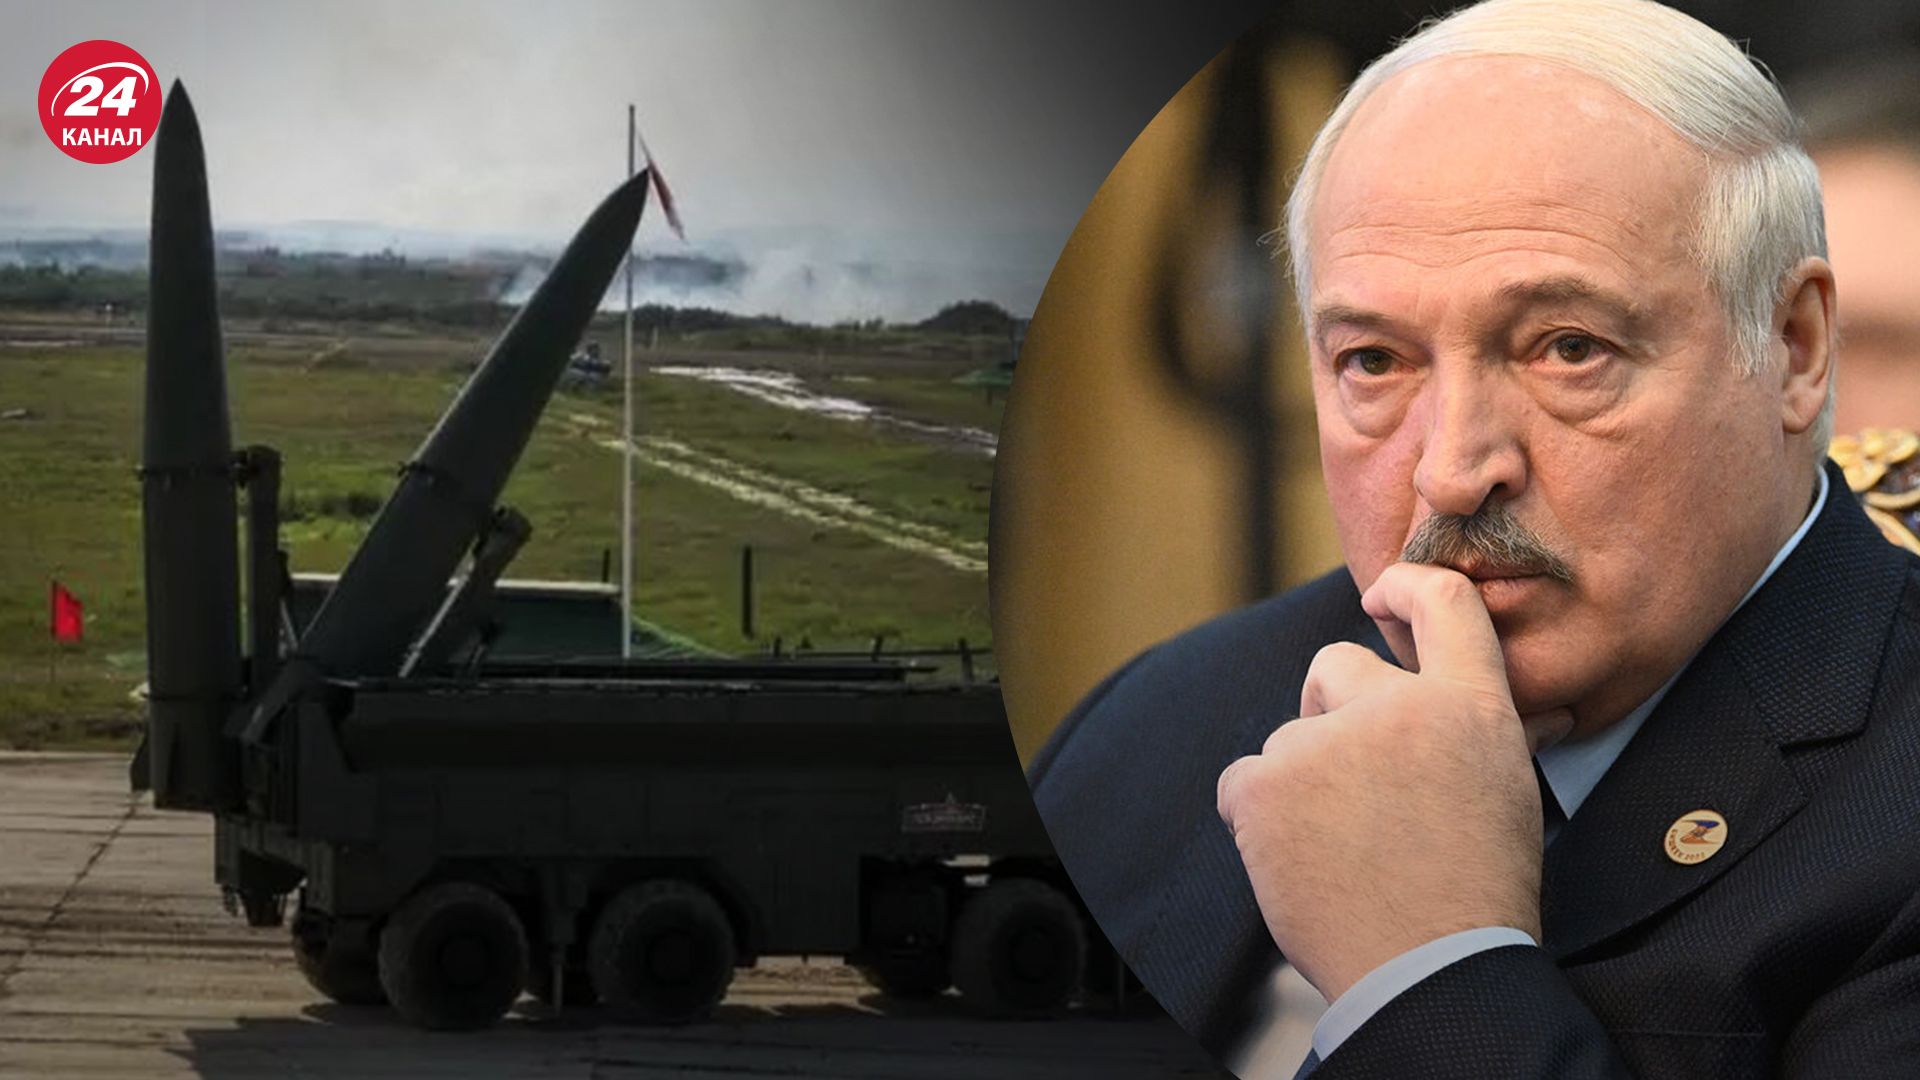 Сможет ли Лукашенко распоряжаться ядерным оружием